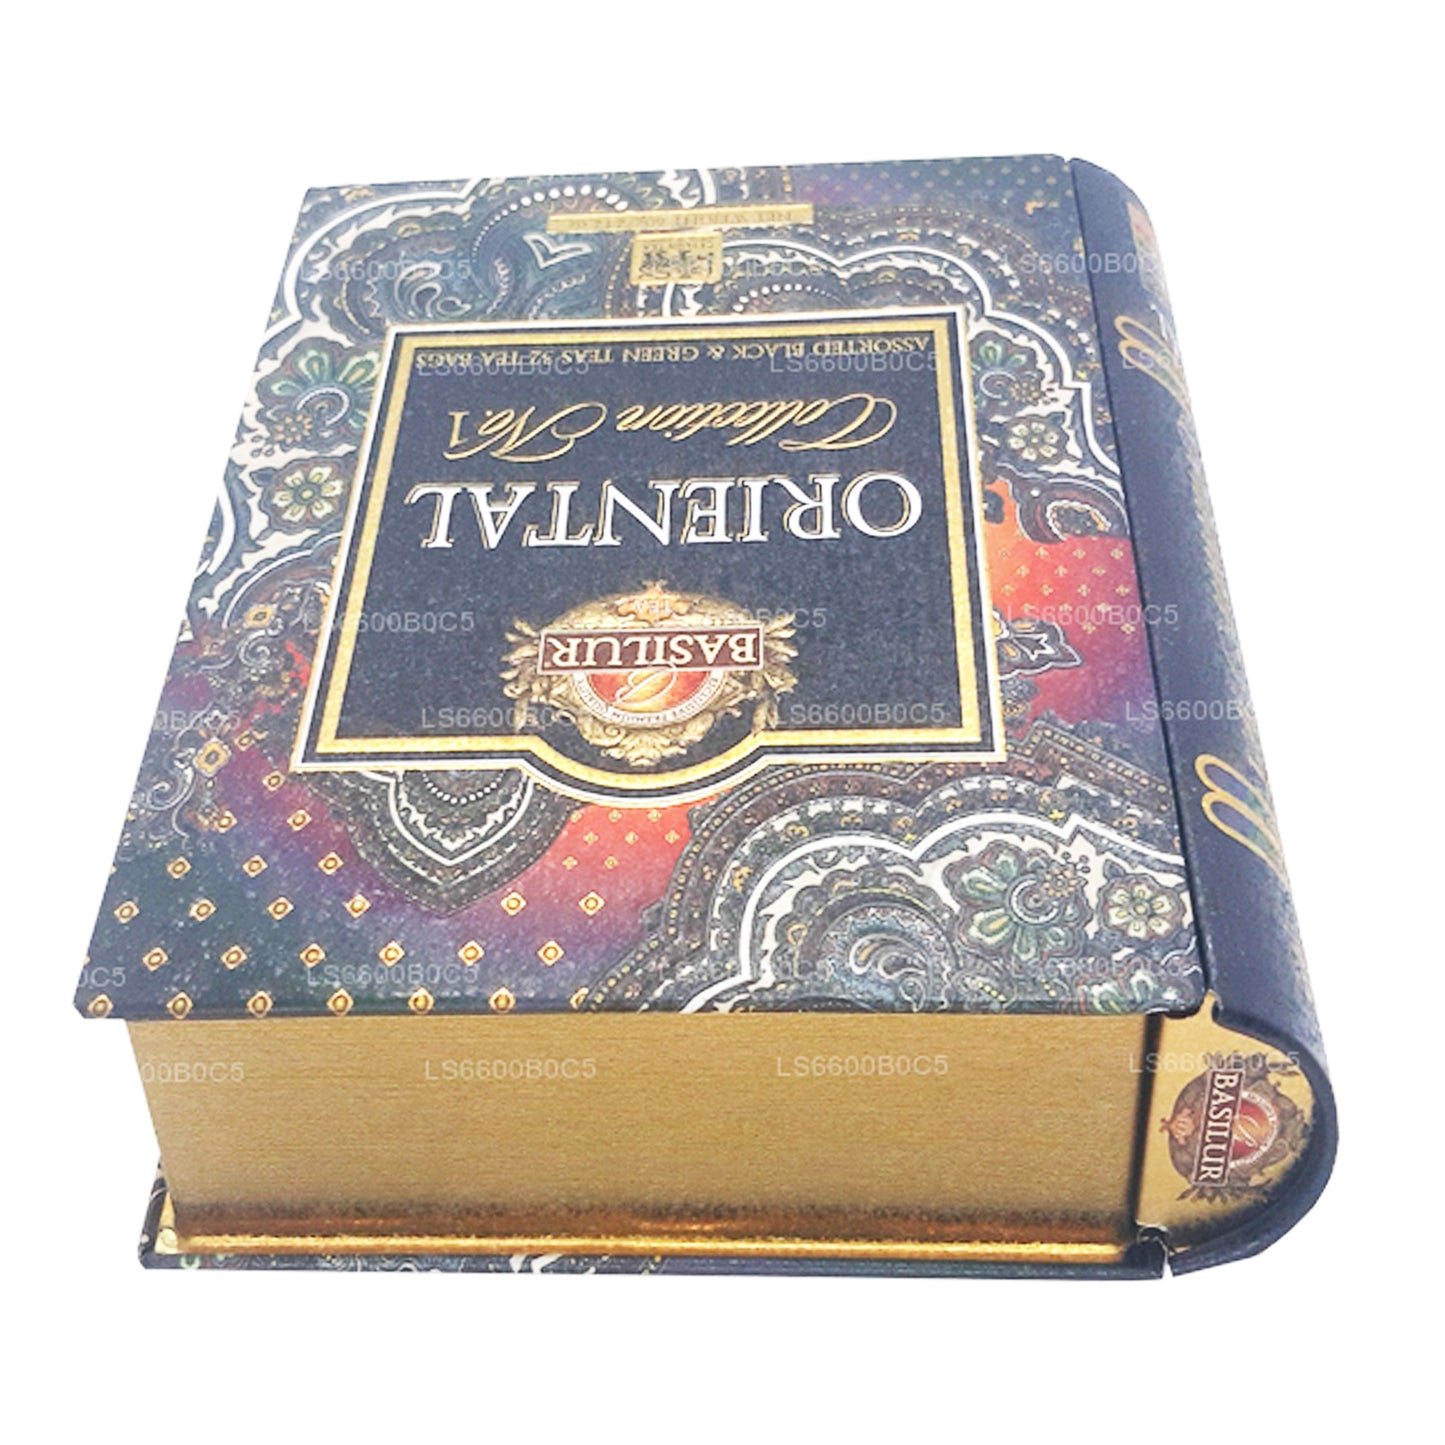 Libro da tè Basilur Oriental Collection Vol 1 (60g) 32 bustine di tè